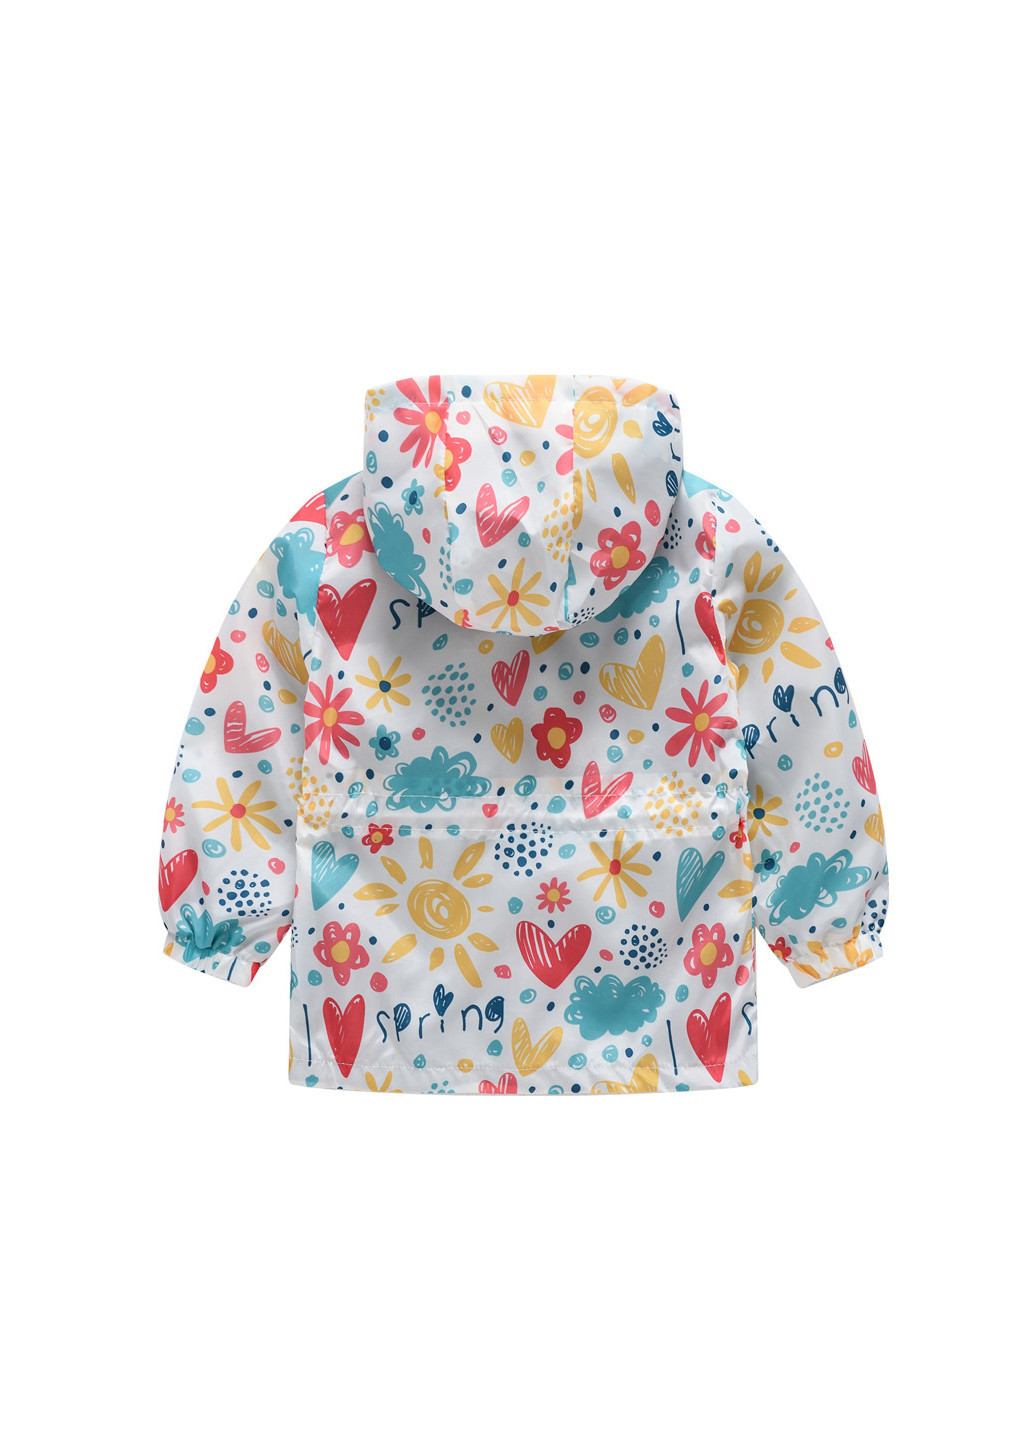 Белая демисезонная куртка-ветровка для девочки весенние краски Jomake 51125